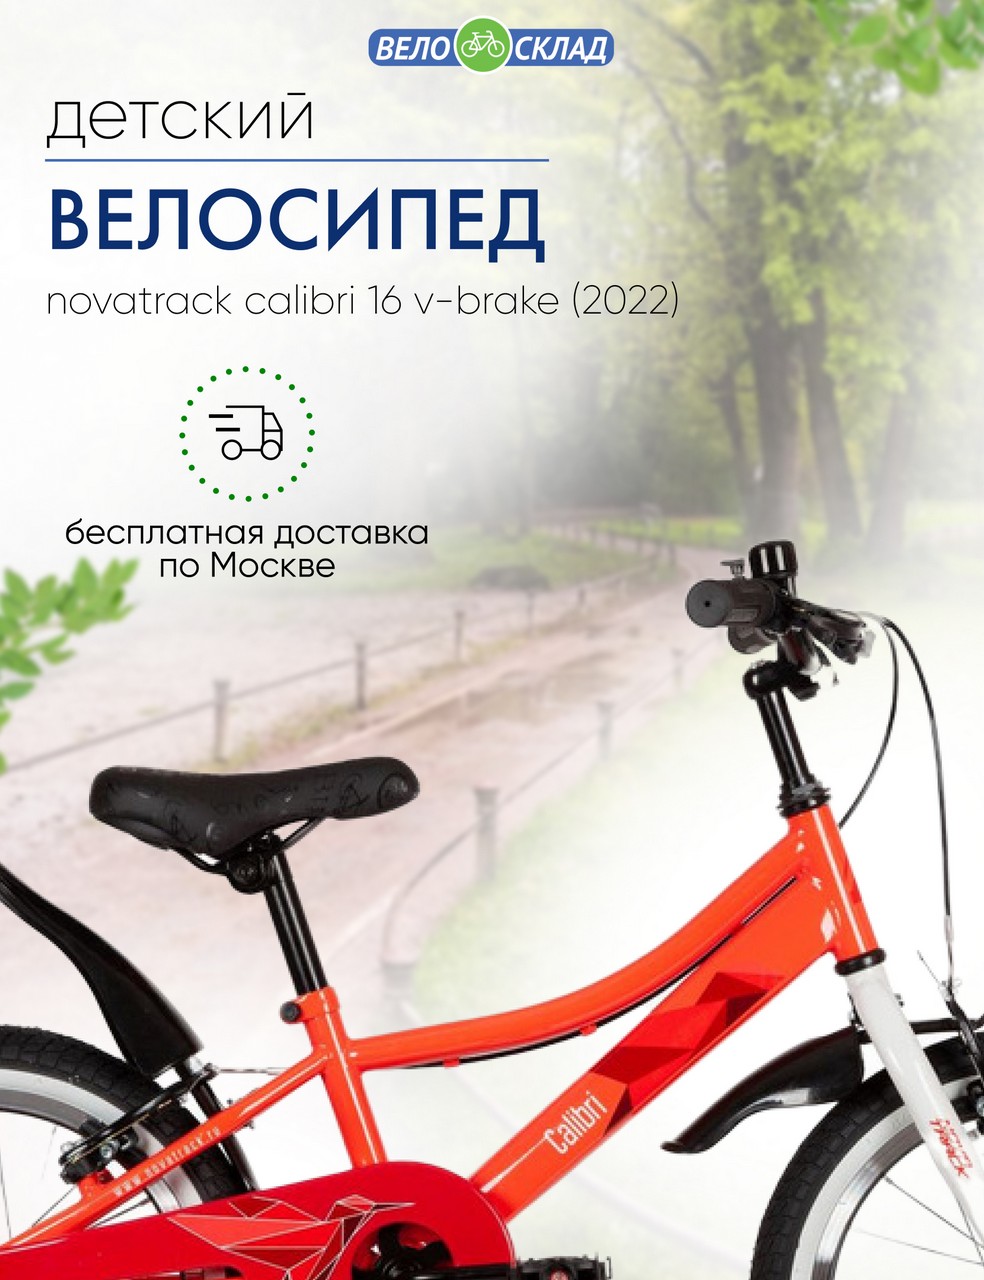 фото Детский велосипед novatrack calibri 16 v-brake, год 2022, цвет оранжевый